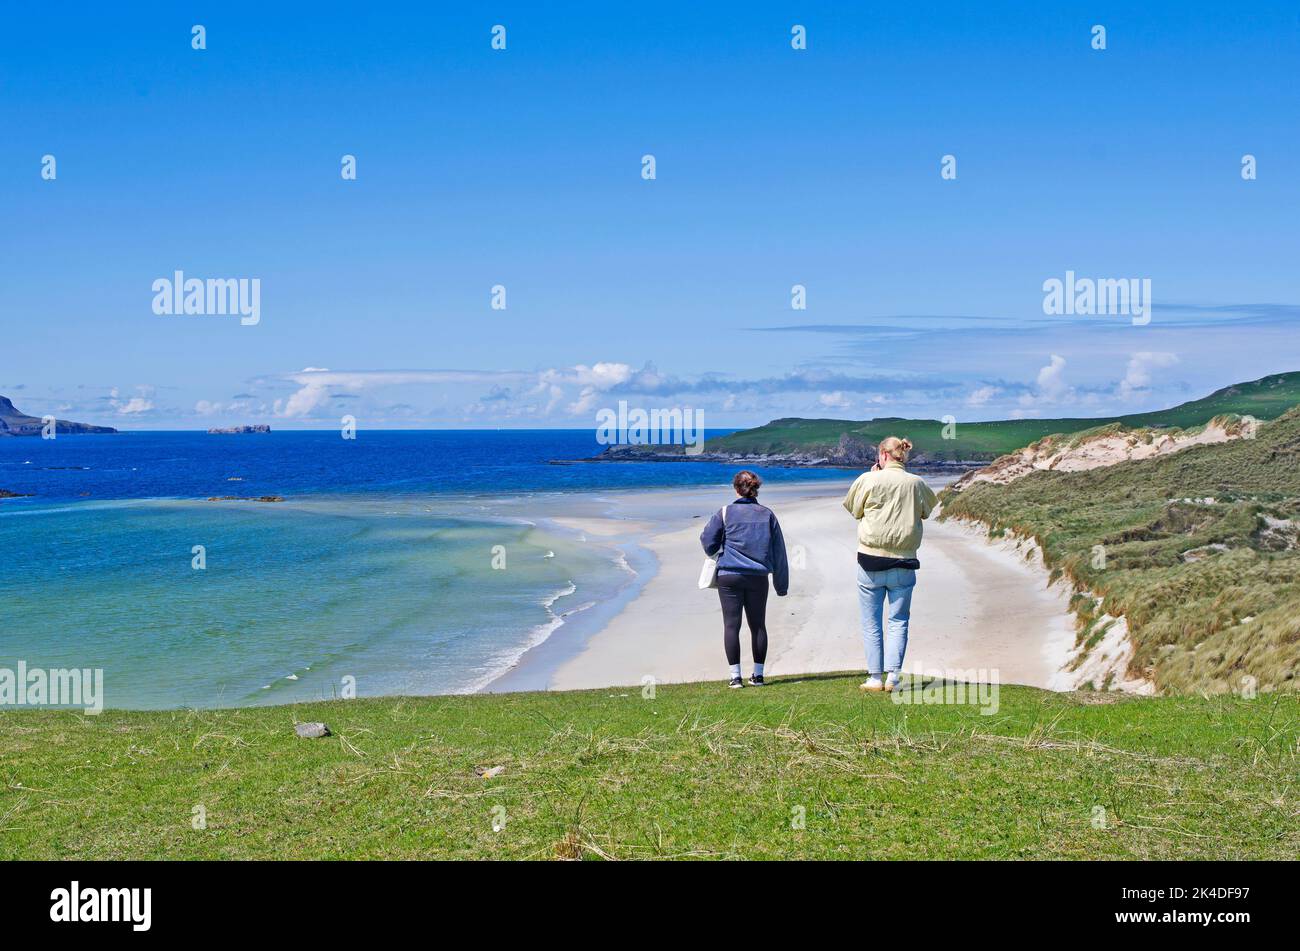 Giovani coppie guardano fuori sulla bella spiaggia vuota all'estremità della baia di Balnakeil, di Durness, Sutherland, con il promontorio erboso di Faraid Head sulla destra. Foto Stock